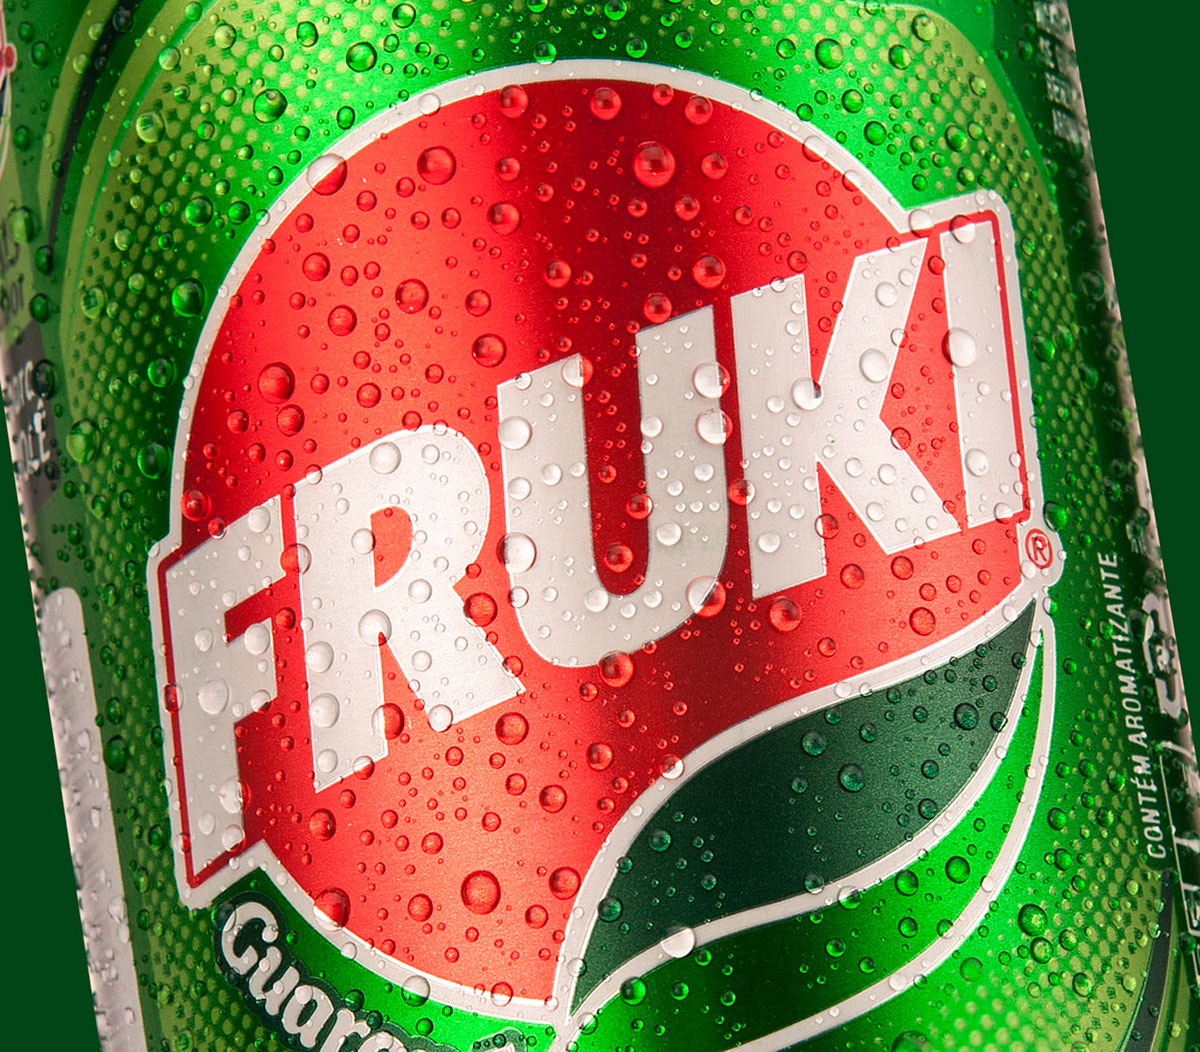 Fotografia photo embalage package fruki soda refrigerante guarana alimento bebida beverage drink gelado